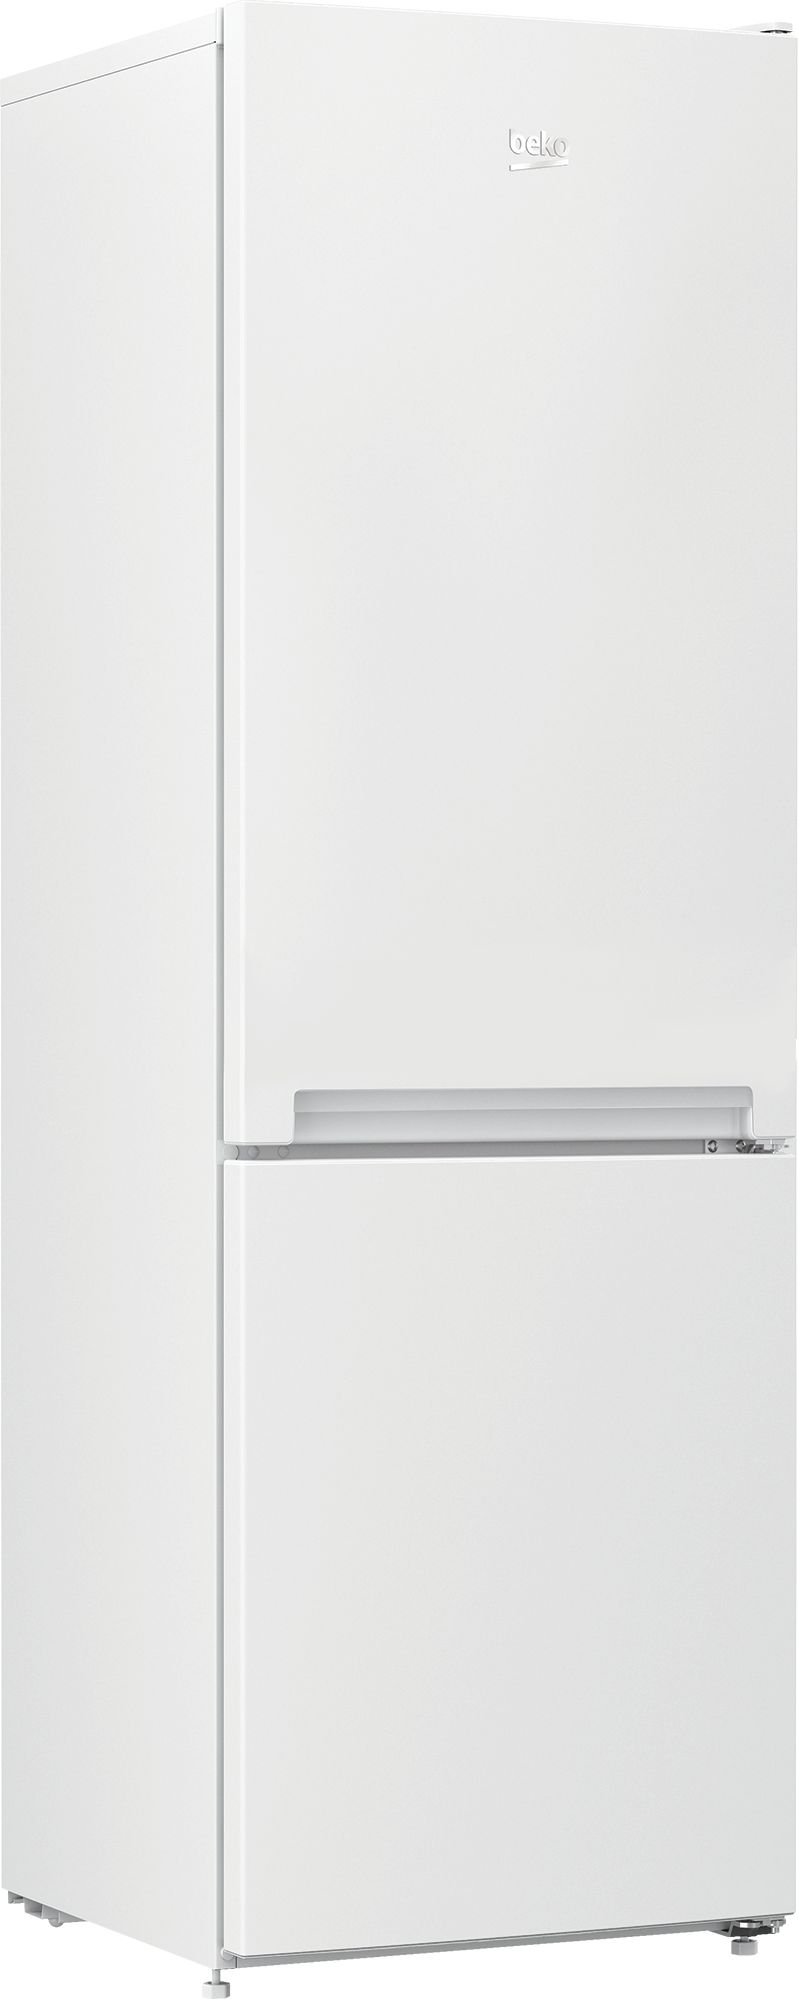 Beko CSG4571W 70/30 Fridge Freezer - White - E Rated, White